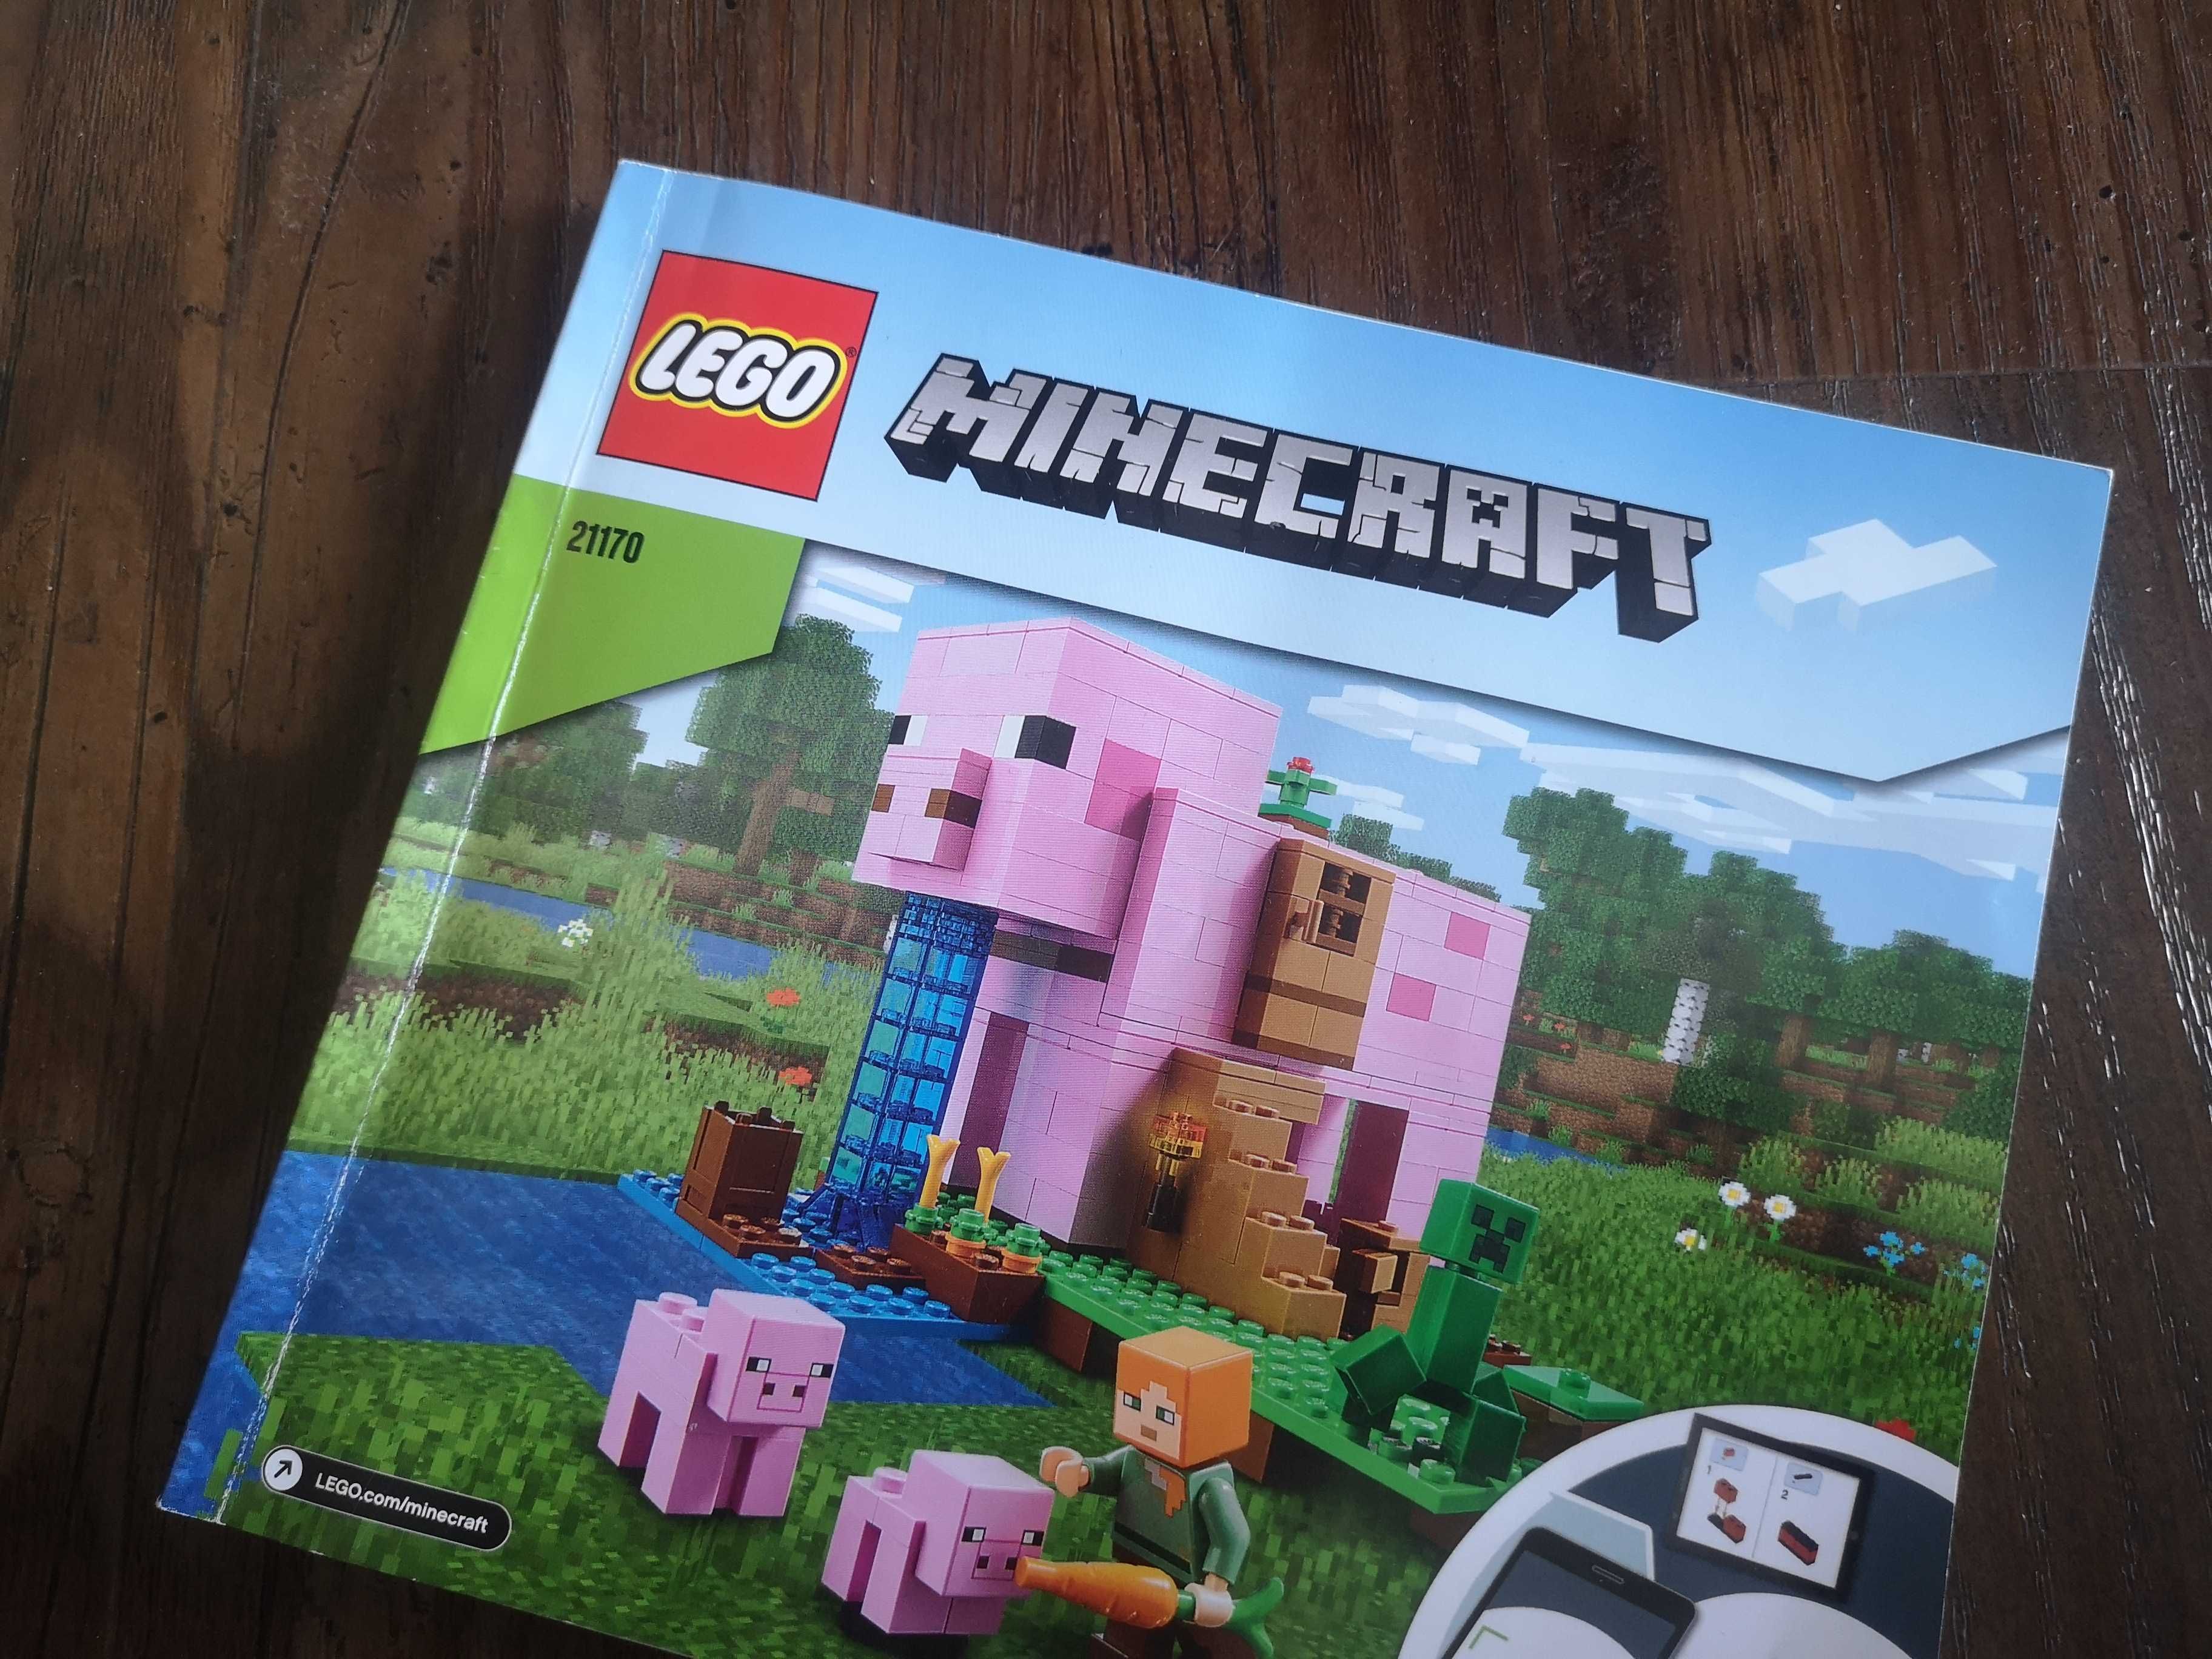 Lego Minecraft - 21170 - Dom w kształcie świni